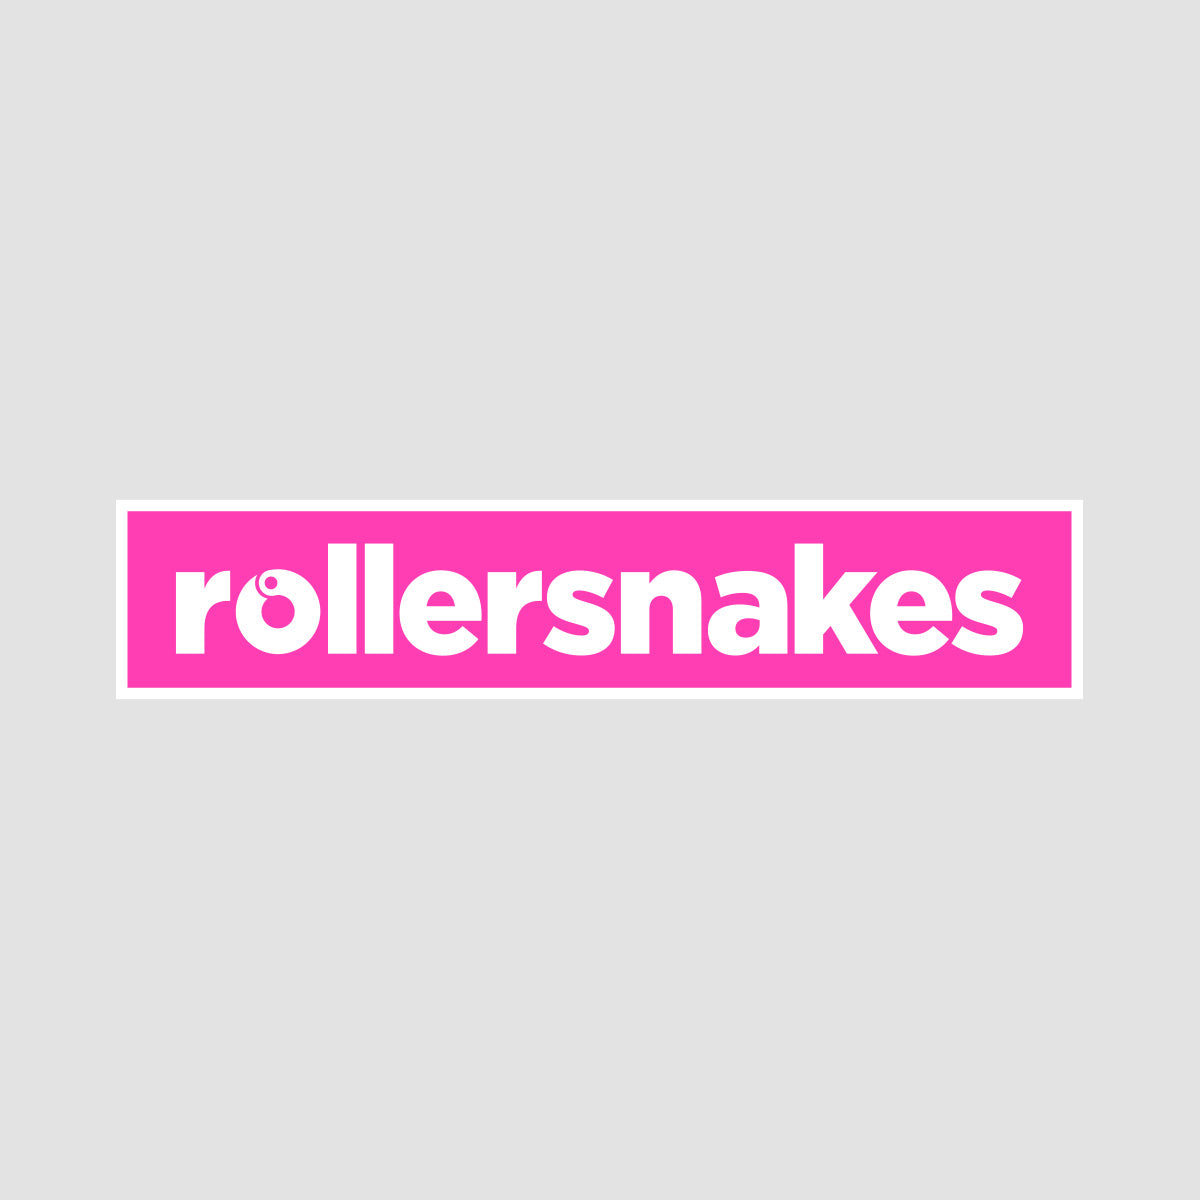 Rollersnakes WordMark Sticker Neon Pink 200x40mm